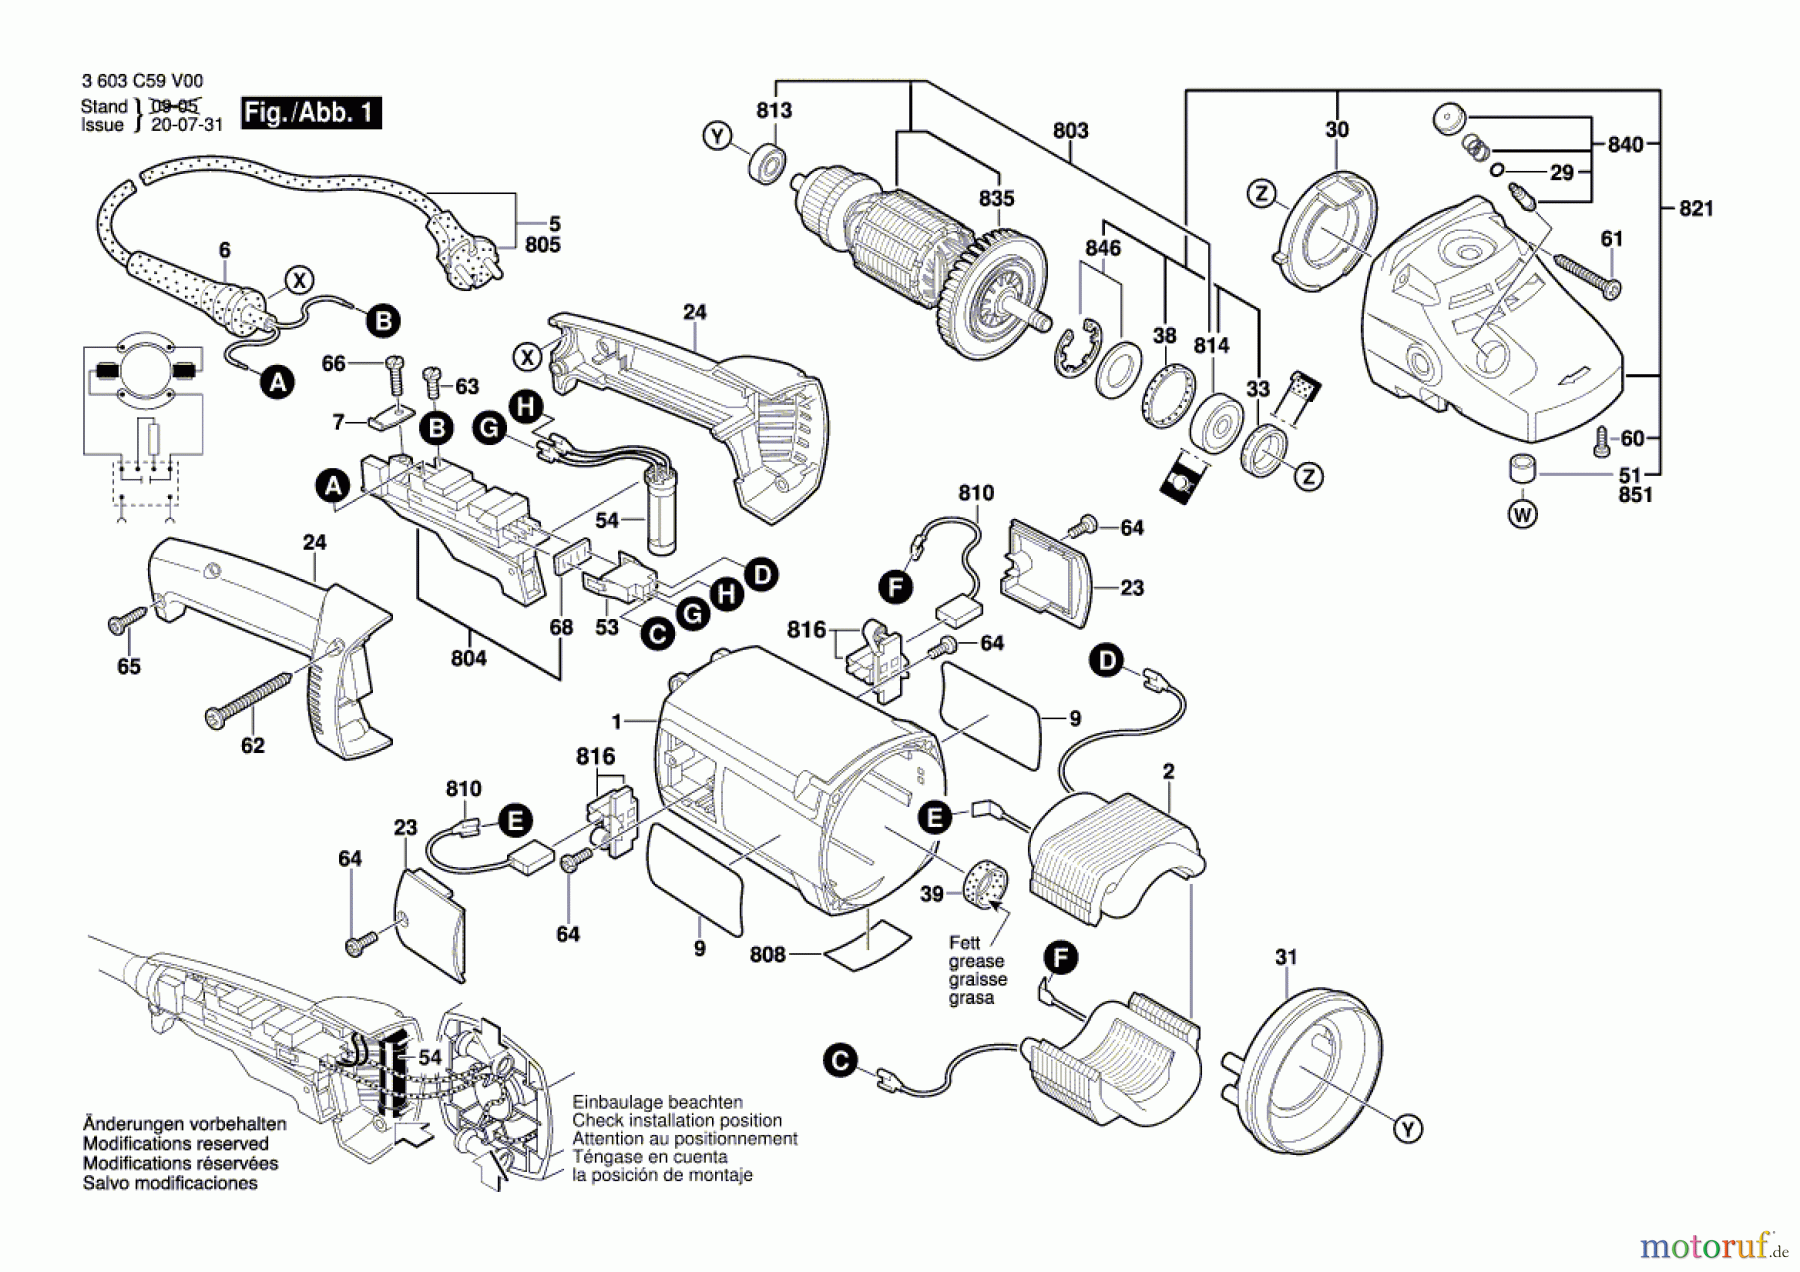  Bosch Werkzeug Winkelschleifer PWS 20-230 J Seite 1